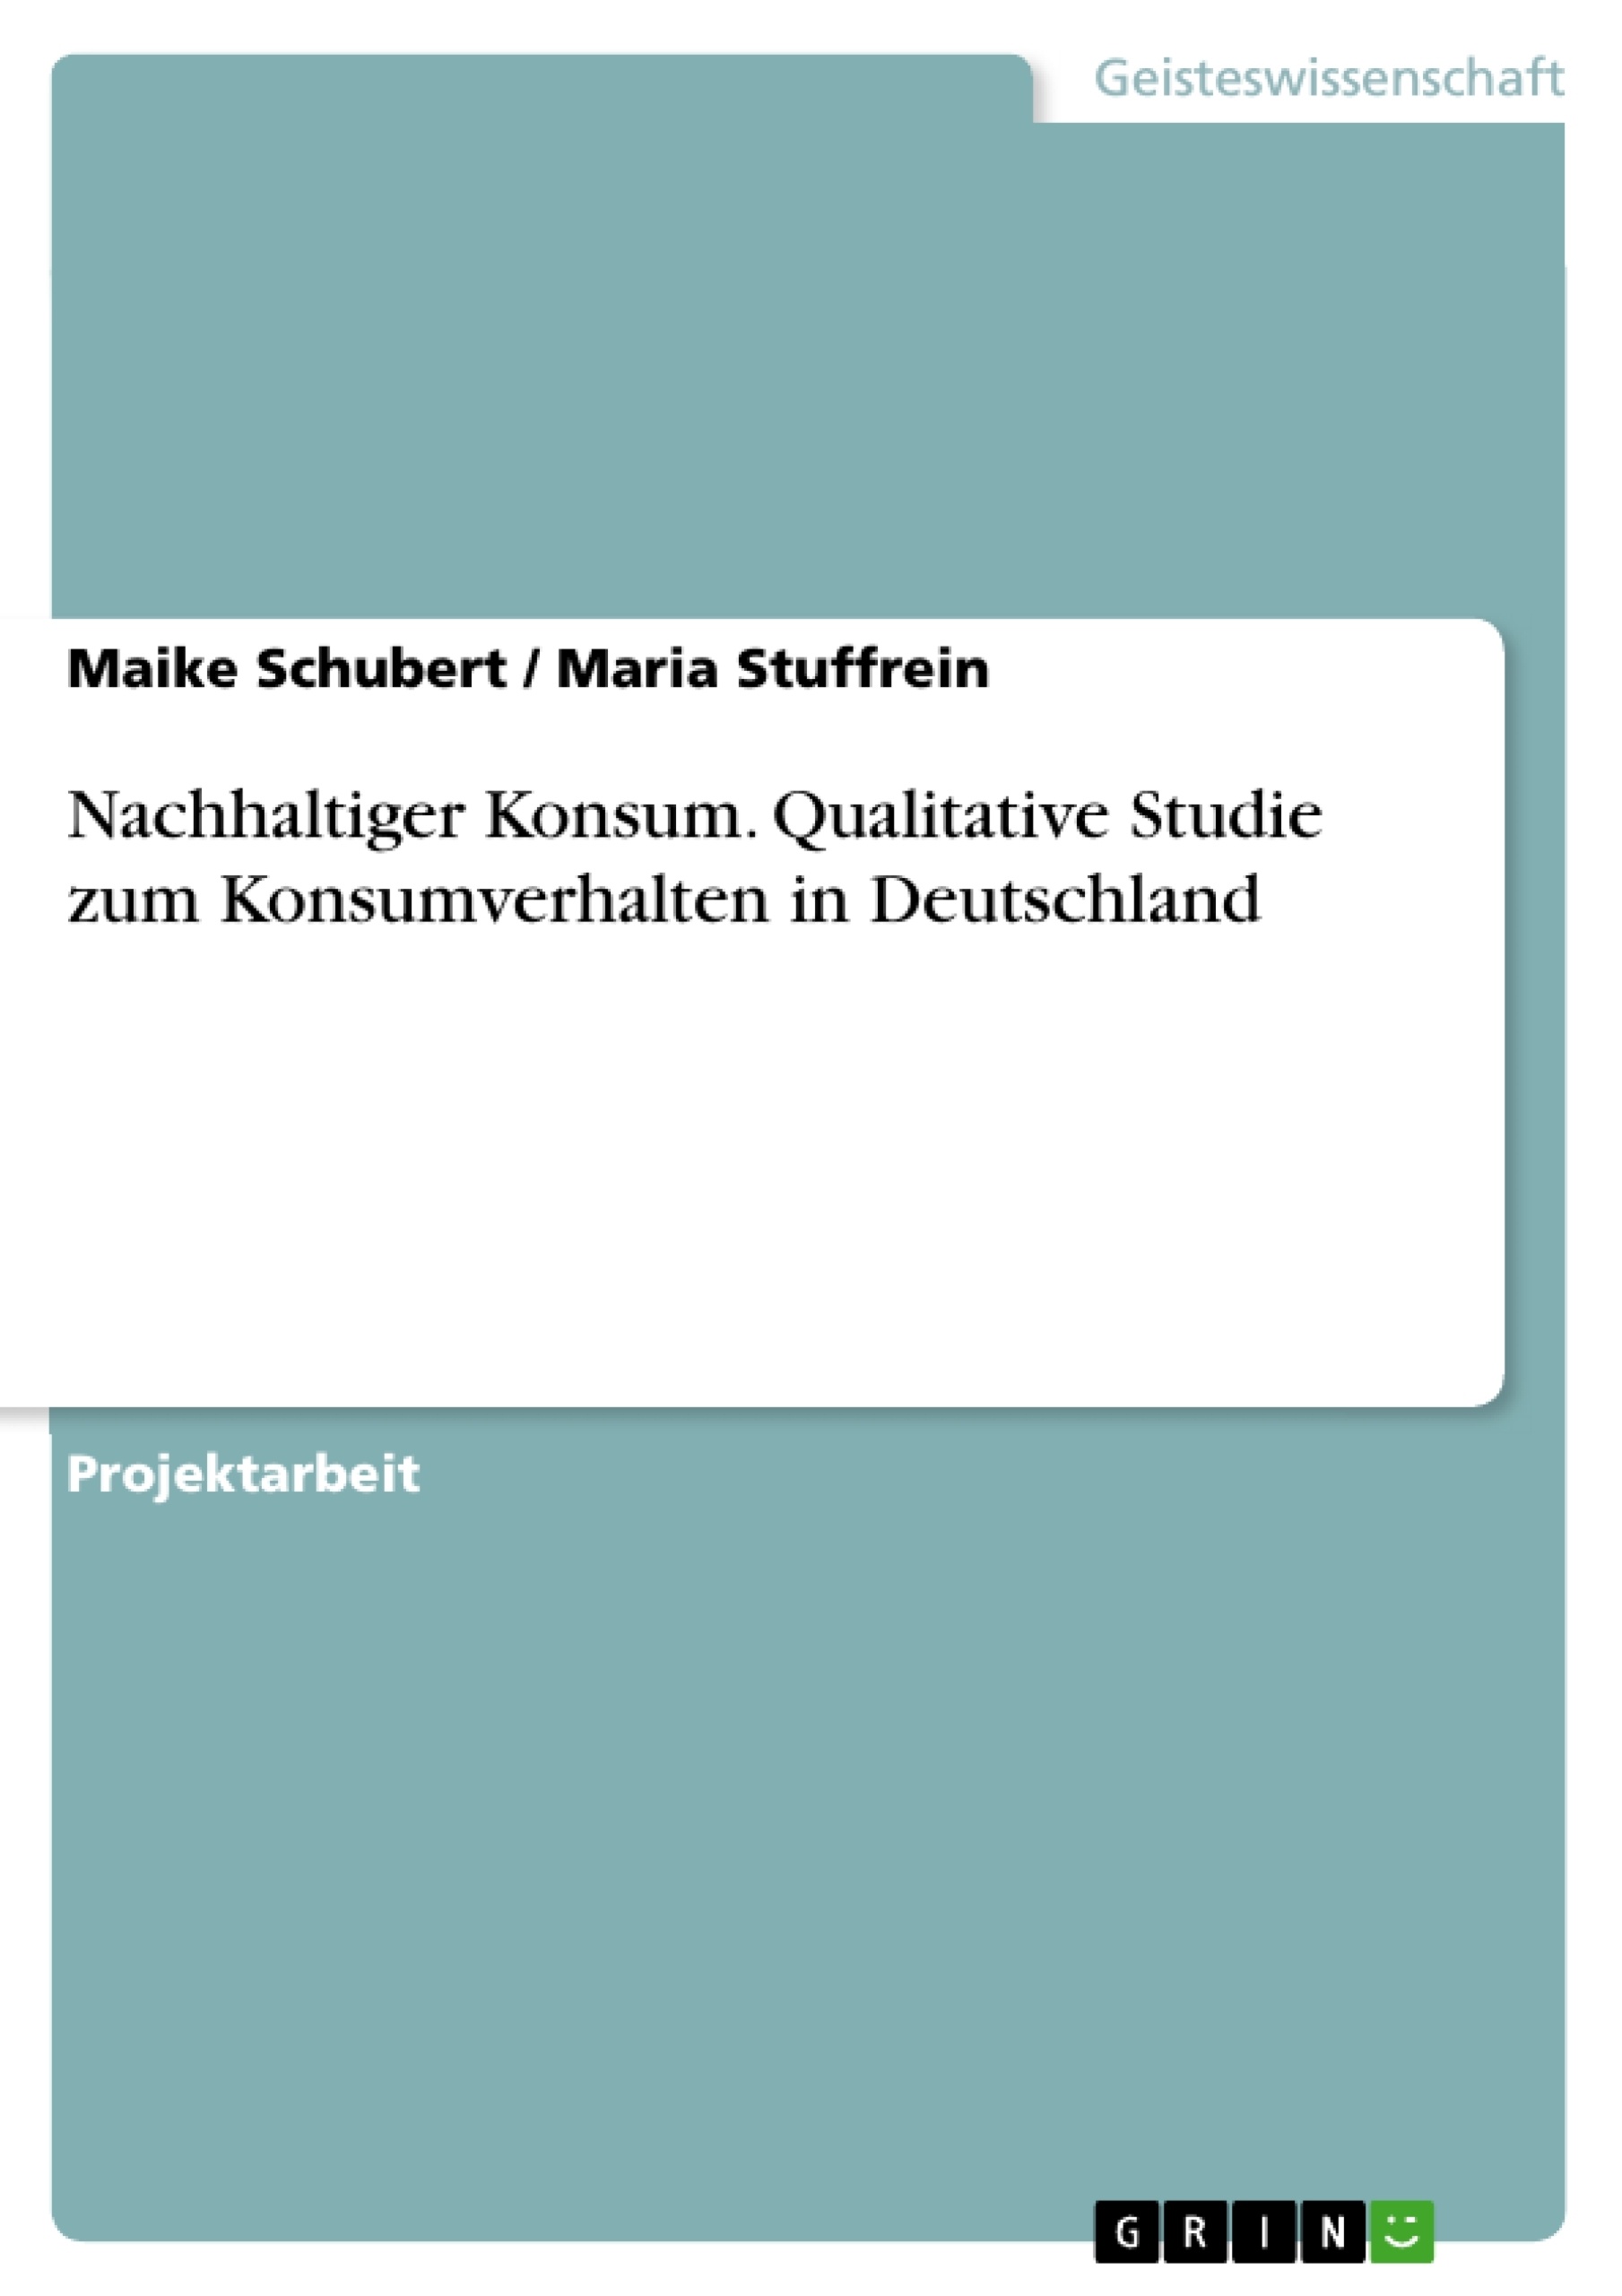 Título: Nachhaltiger Konsum. Qualitative Studie zum Konsumverhalten in Deutschland